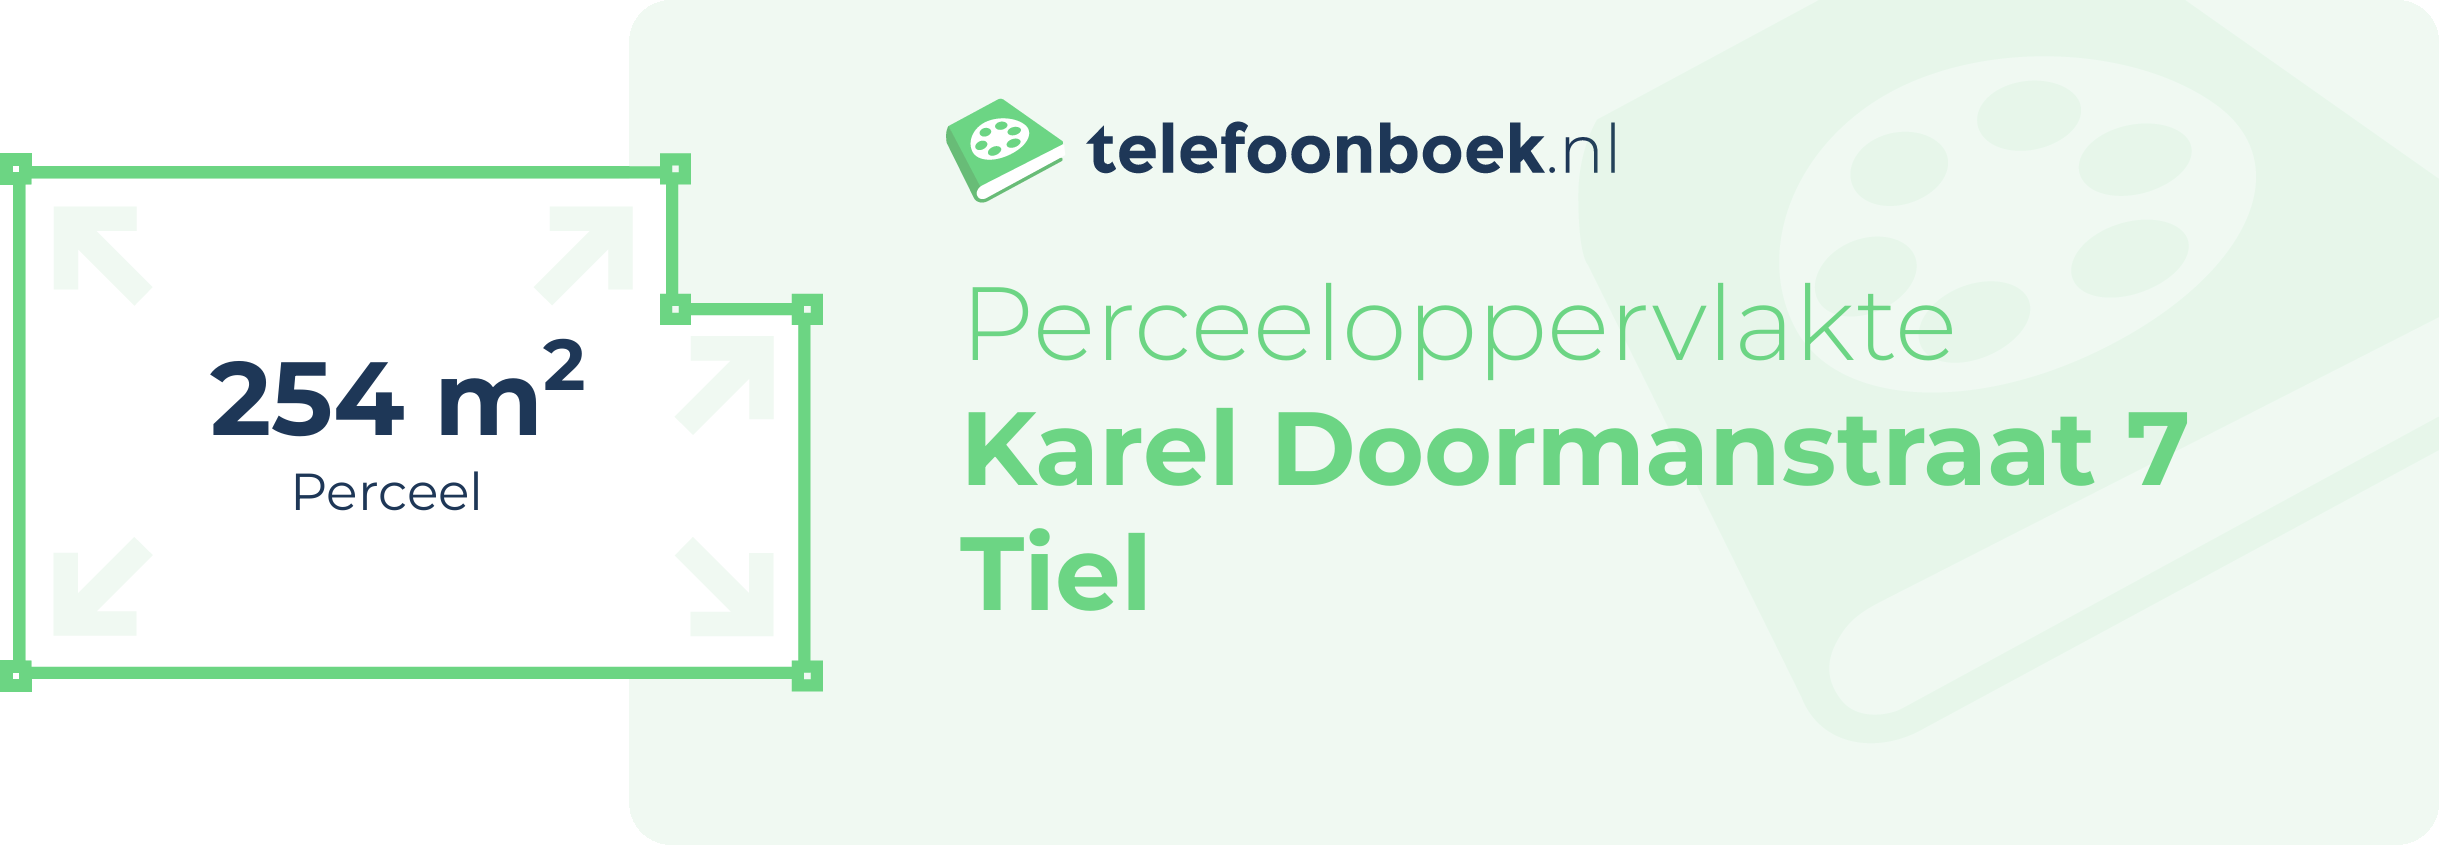 Perceeloppervlakte Karel Doormanstraat 7 Tiel